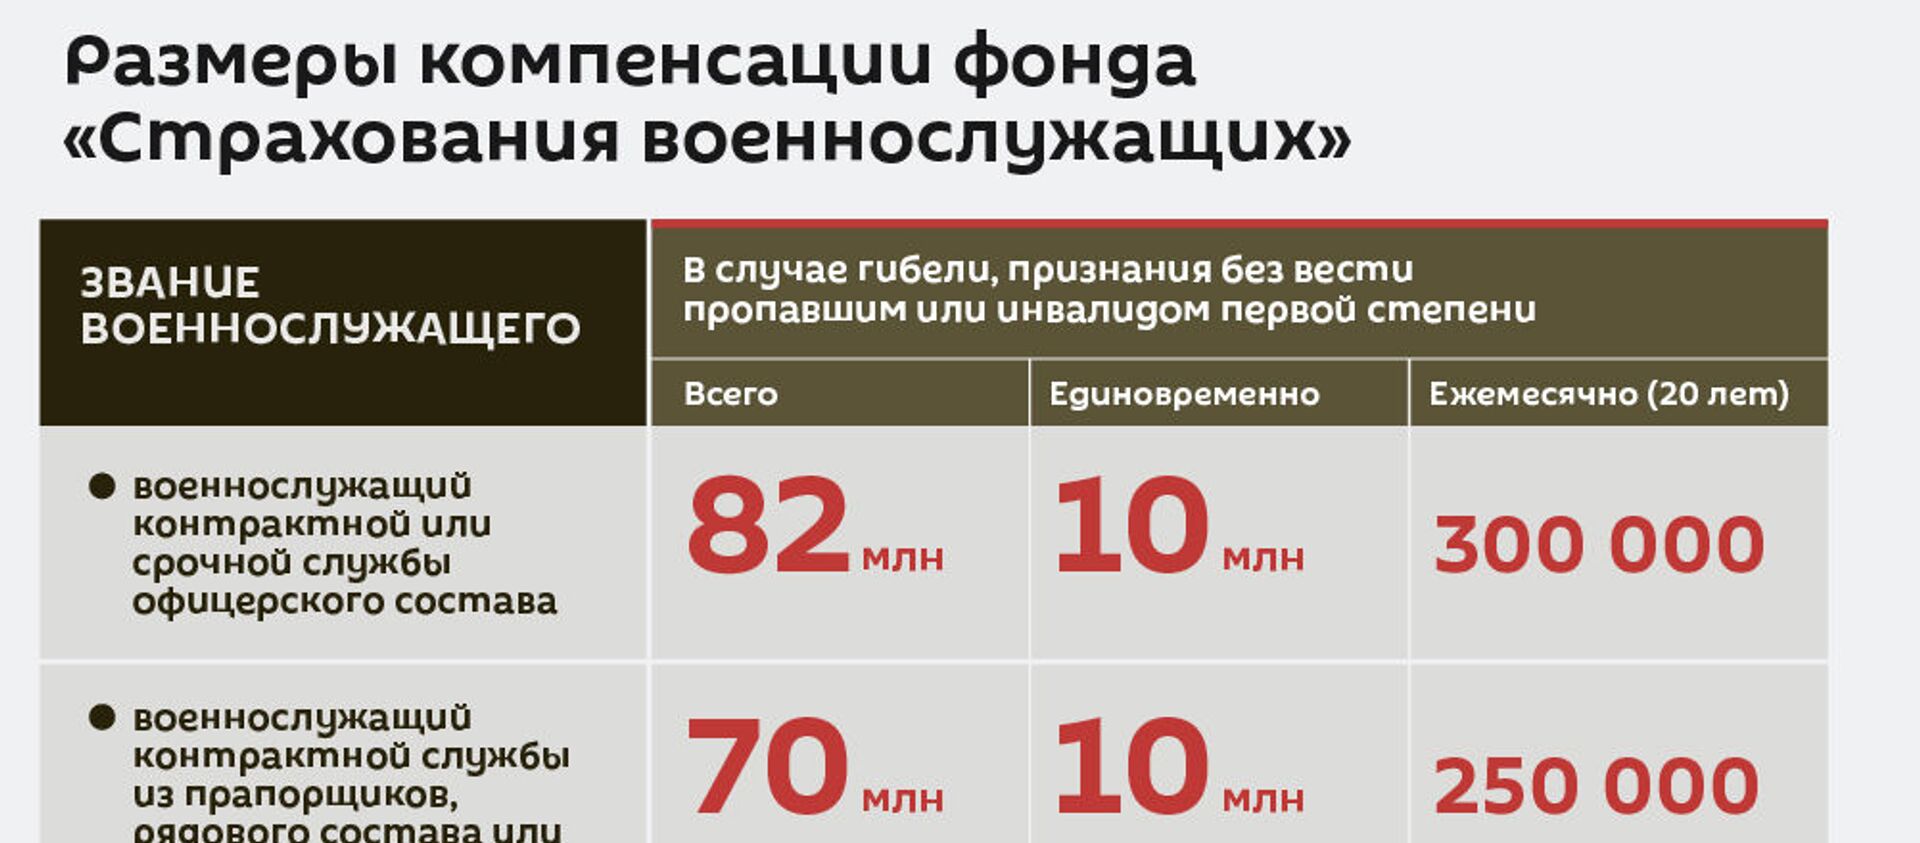 Размеры компенсации фонда «Страхования военнослужащих» - Sputnik Армения, 1920, 08.12.2020